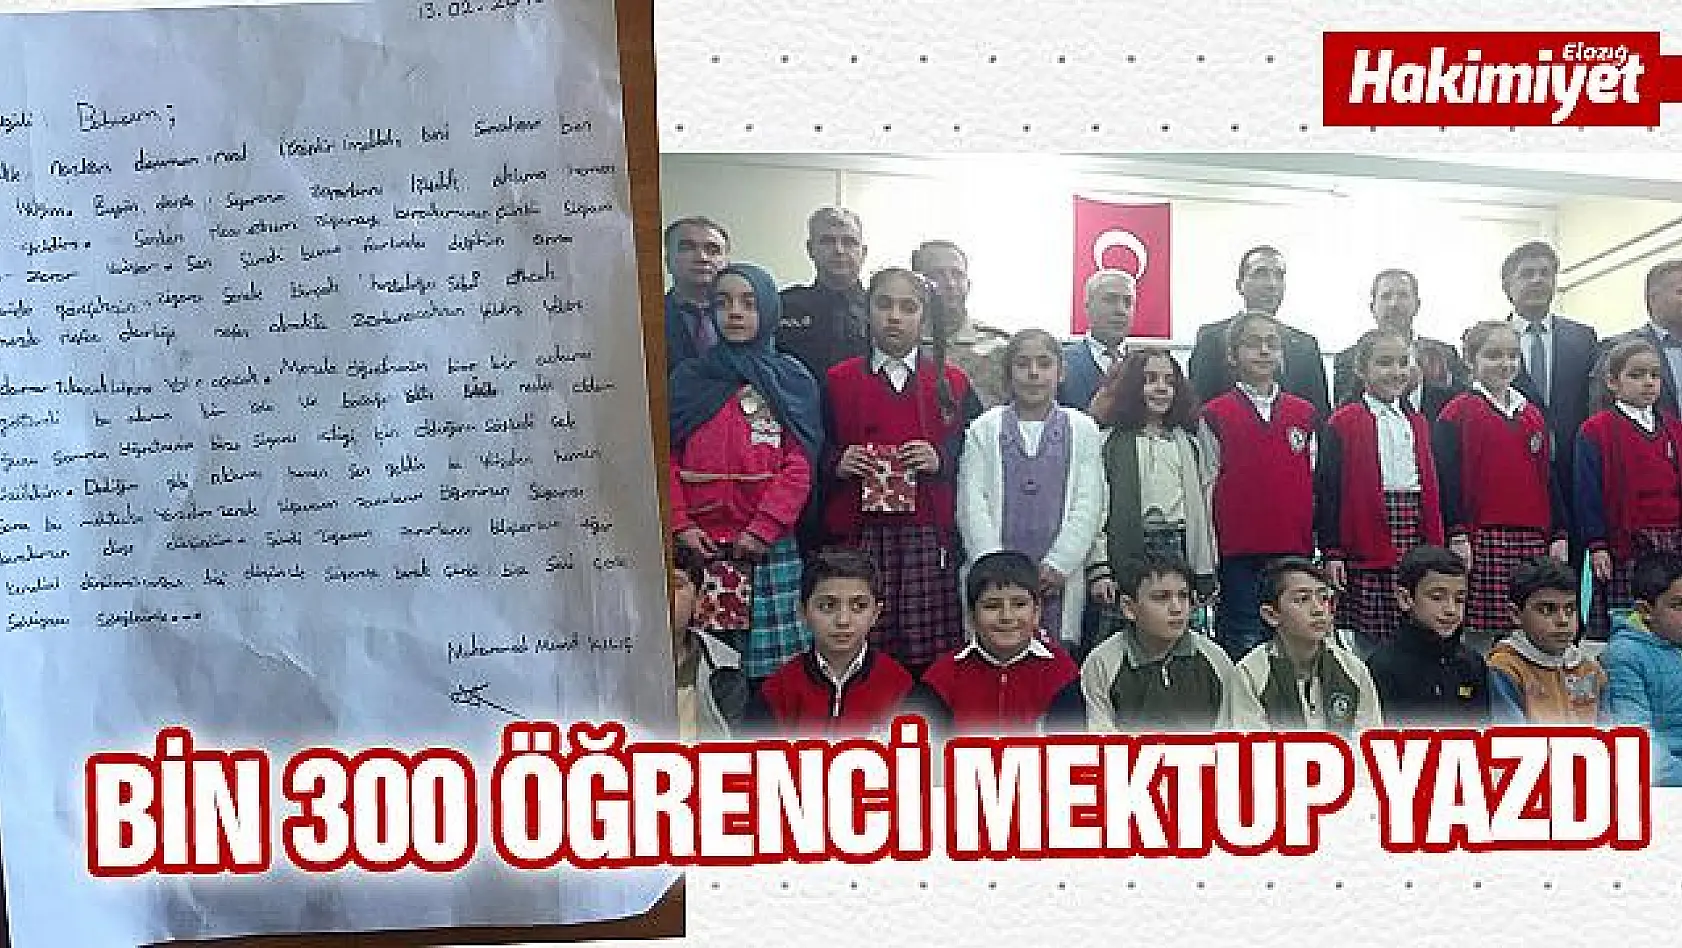 Öğrenciler, sigara ile mücadele için bin 300 öğrenci mektup yazdı